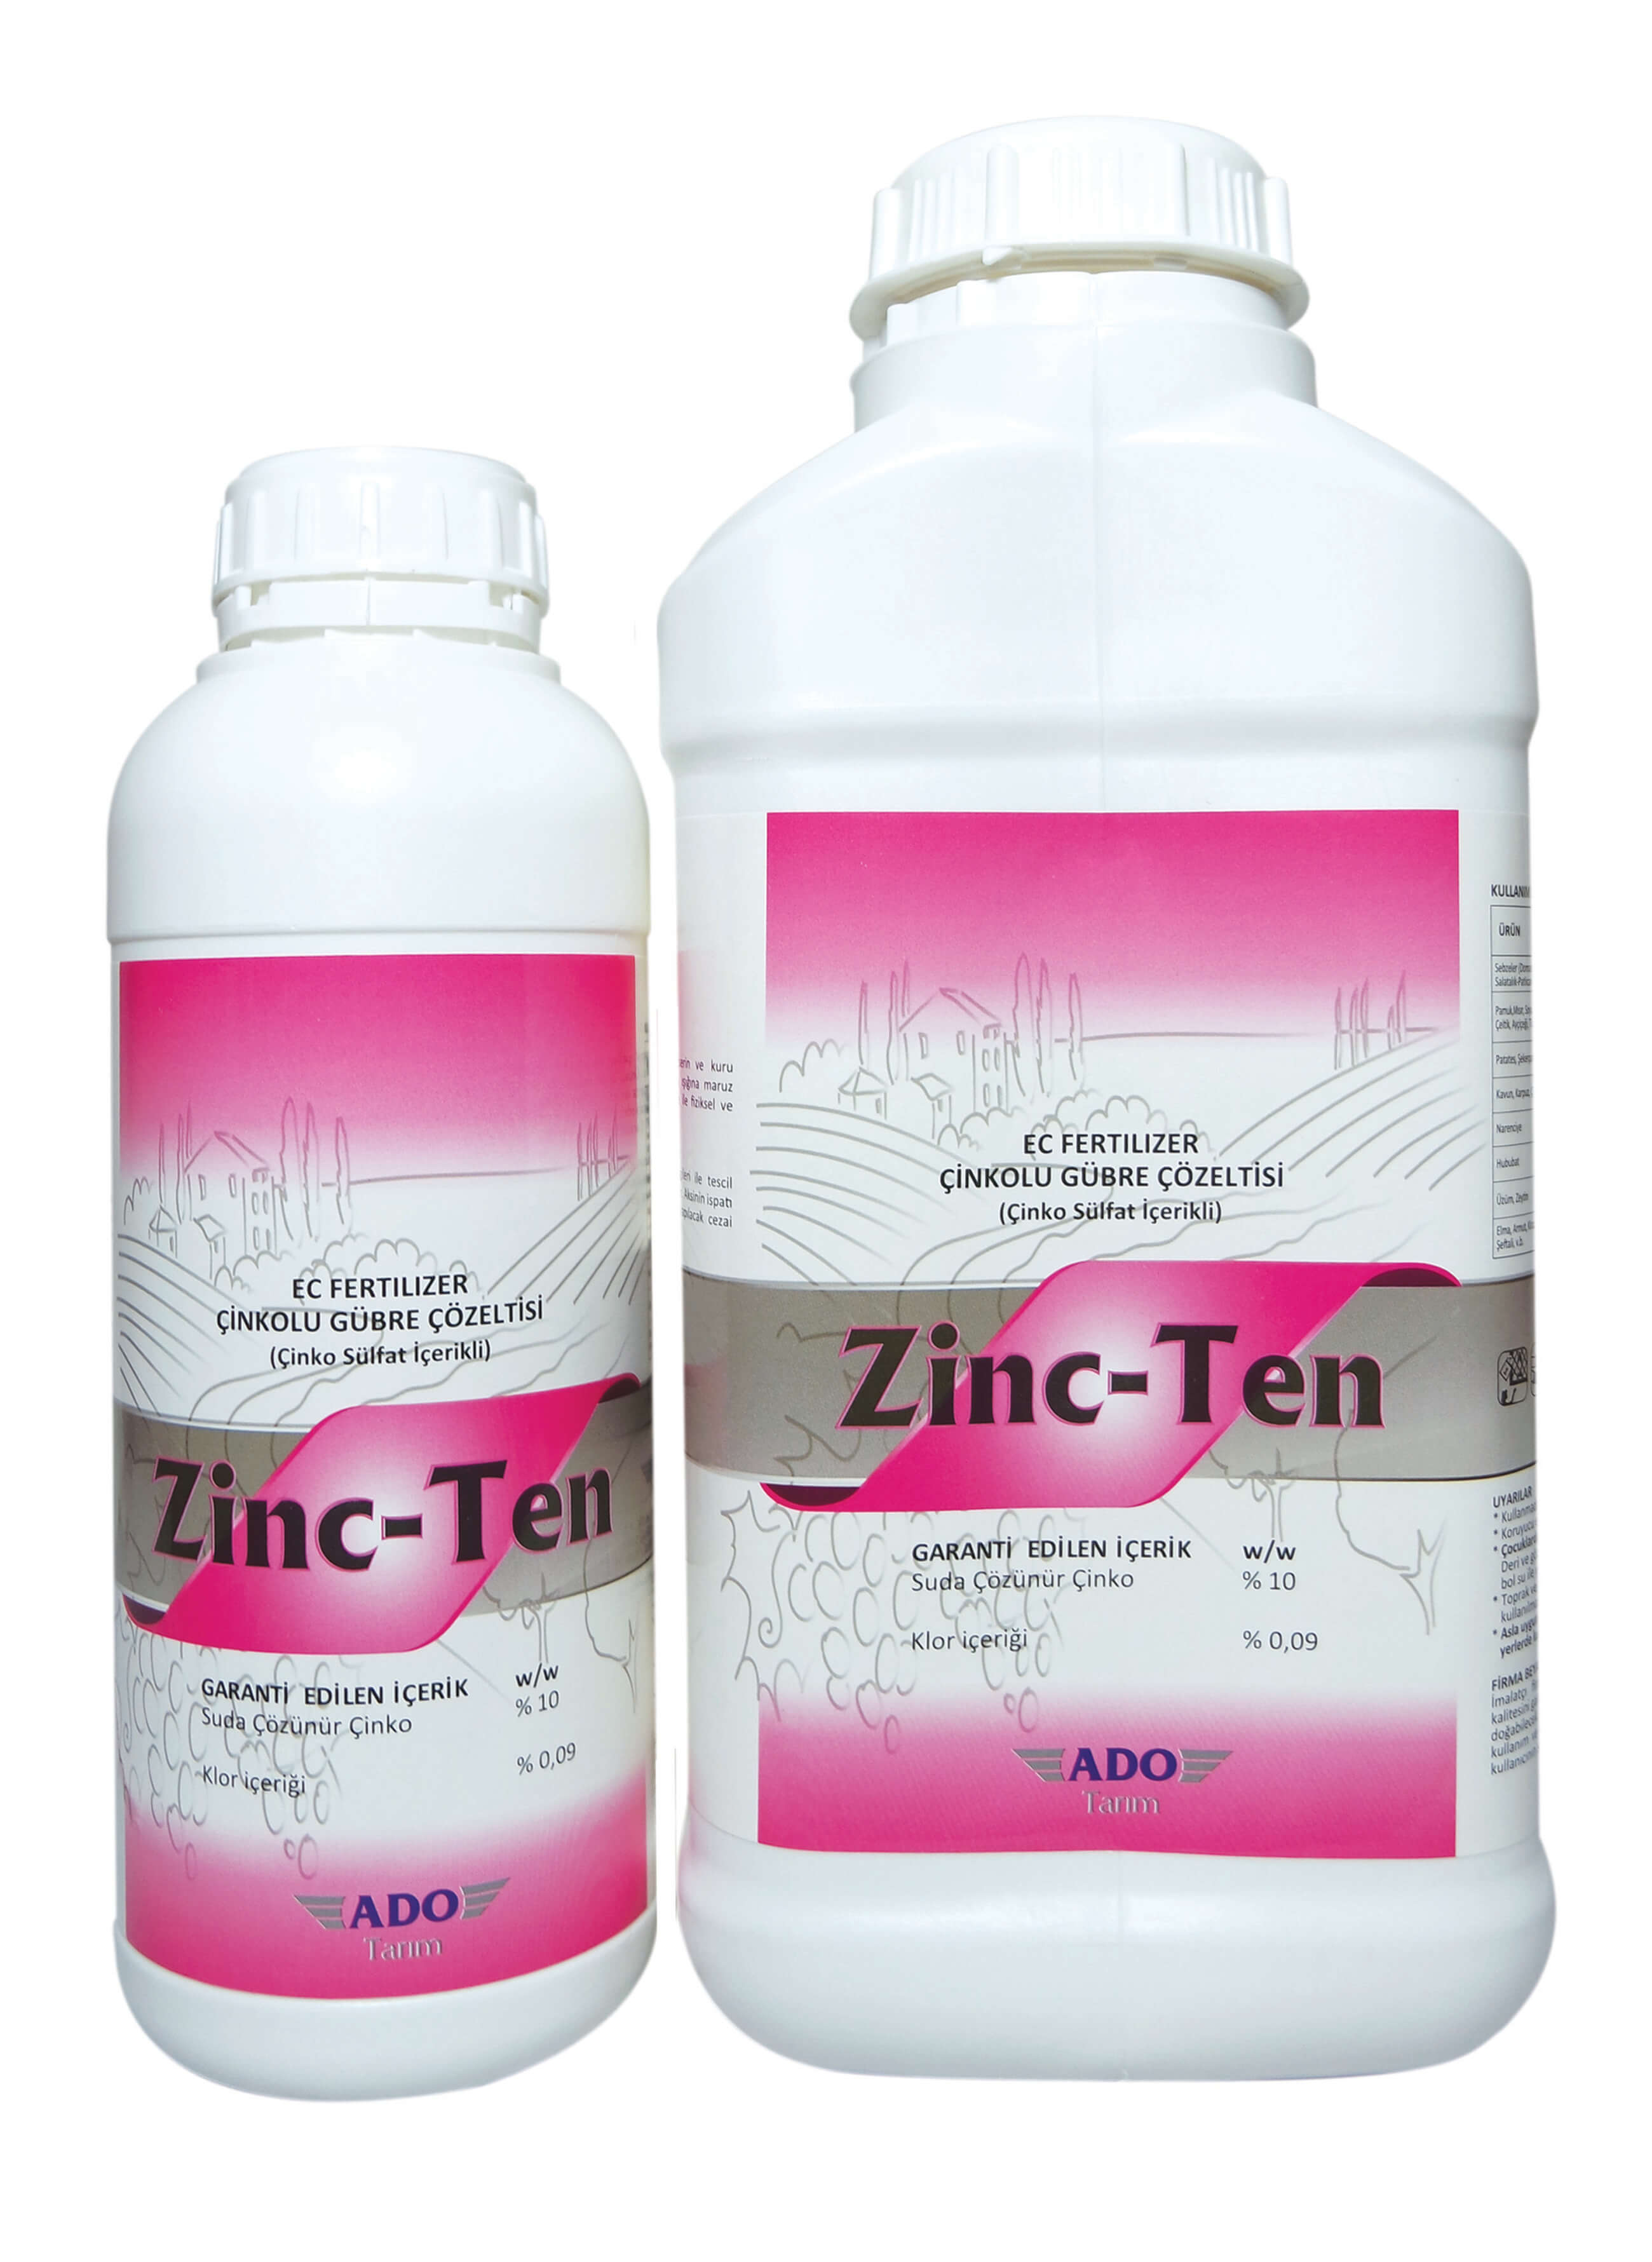 Zinc-Ten